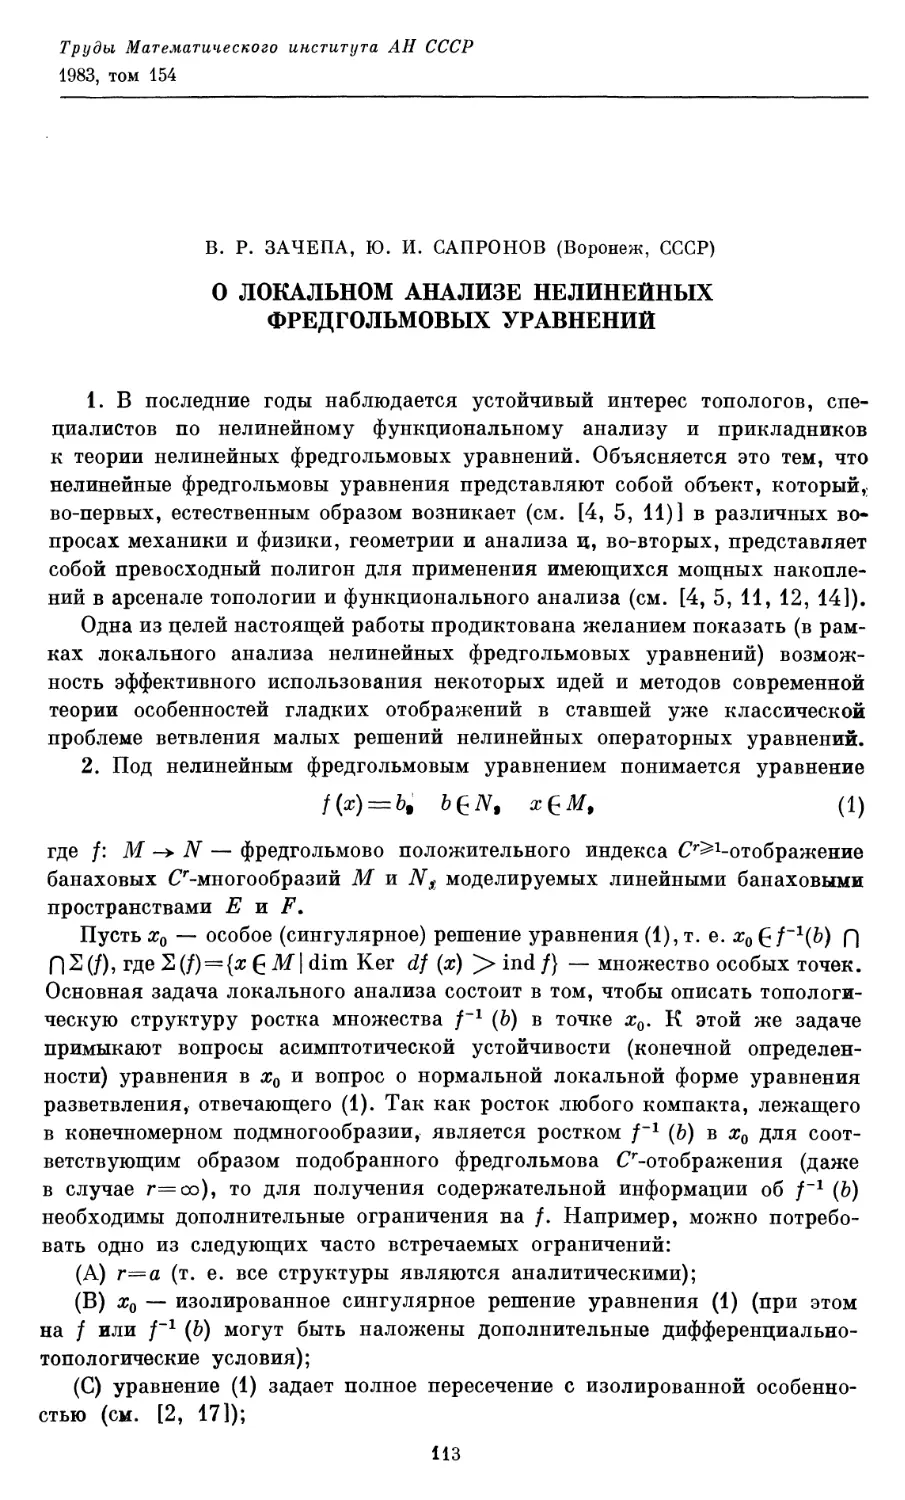 Зачепа В. Р., Сапронов Ю. И. О локальном анализе нелинейных фредгольмовых уравнений